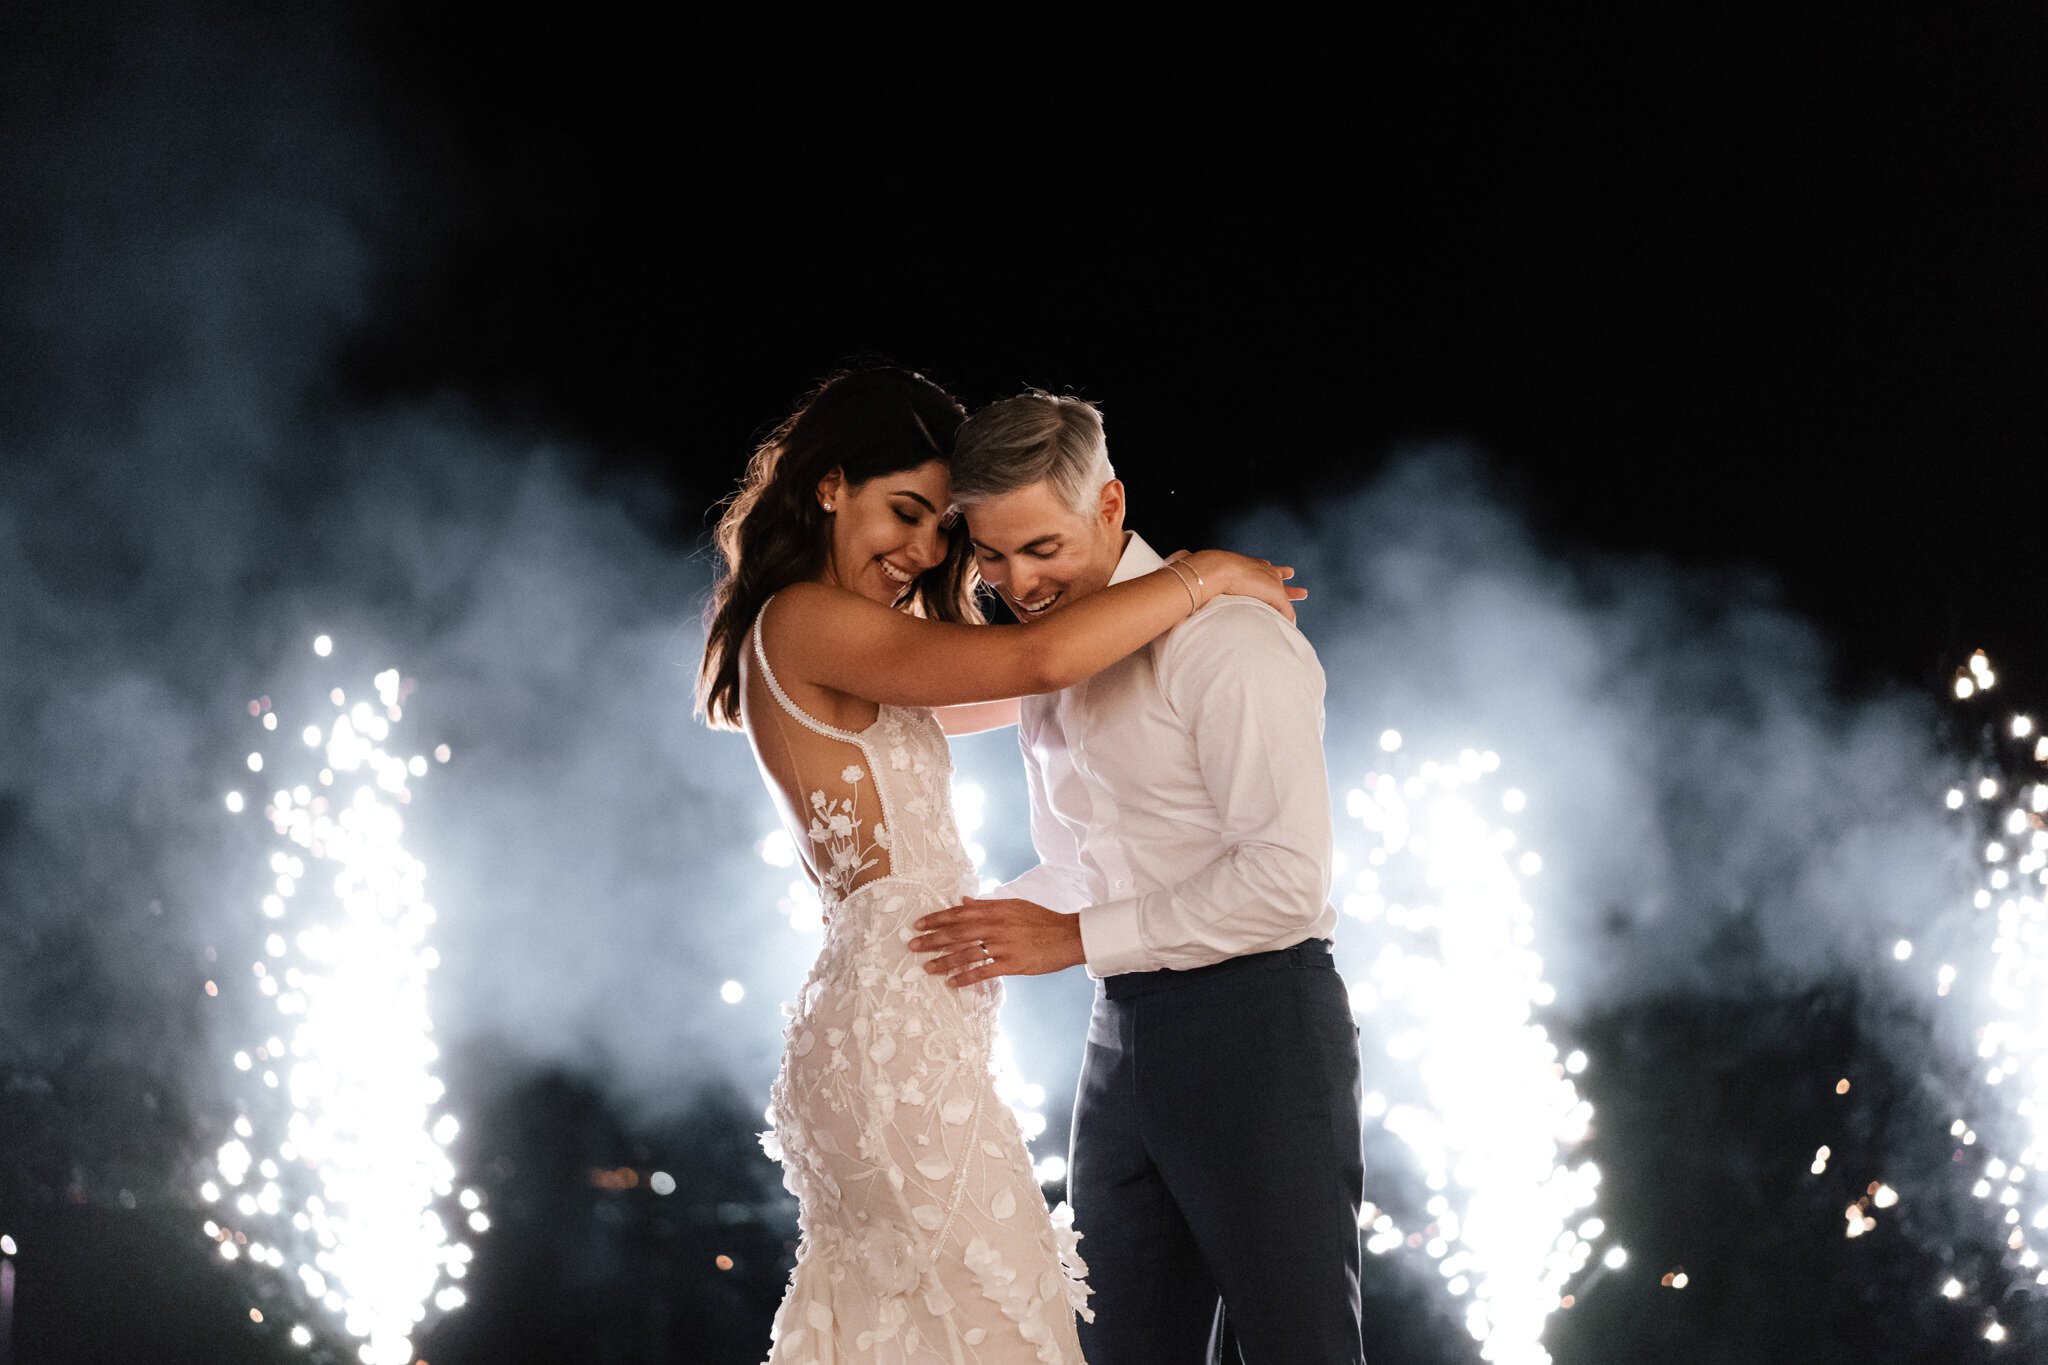 Greece+Santorini+Rhodes+wedding+photogtaphy-215.jpg